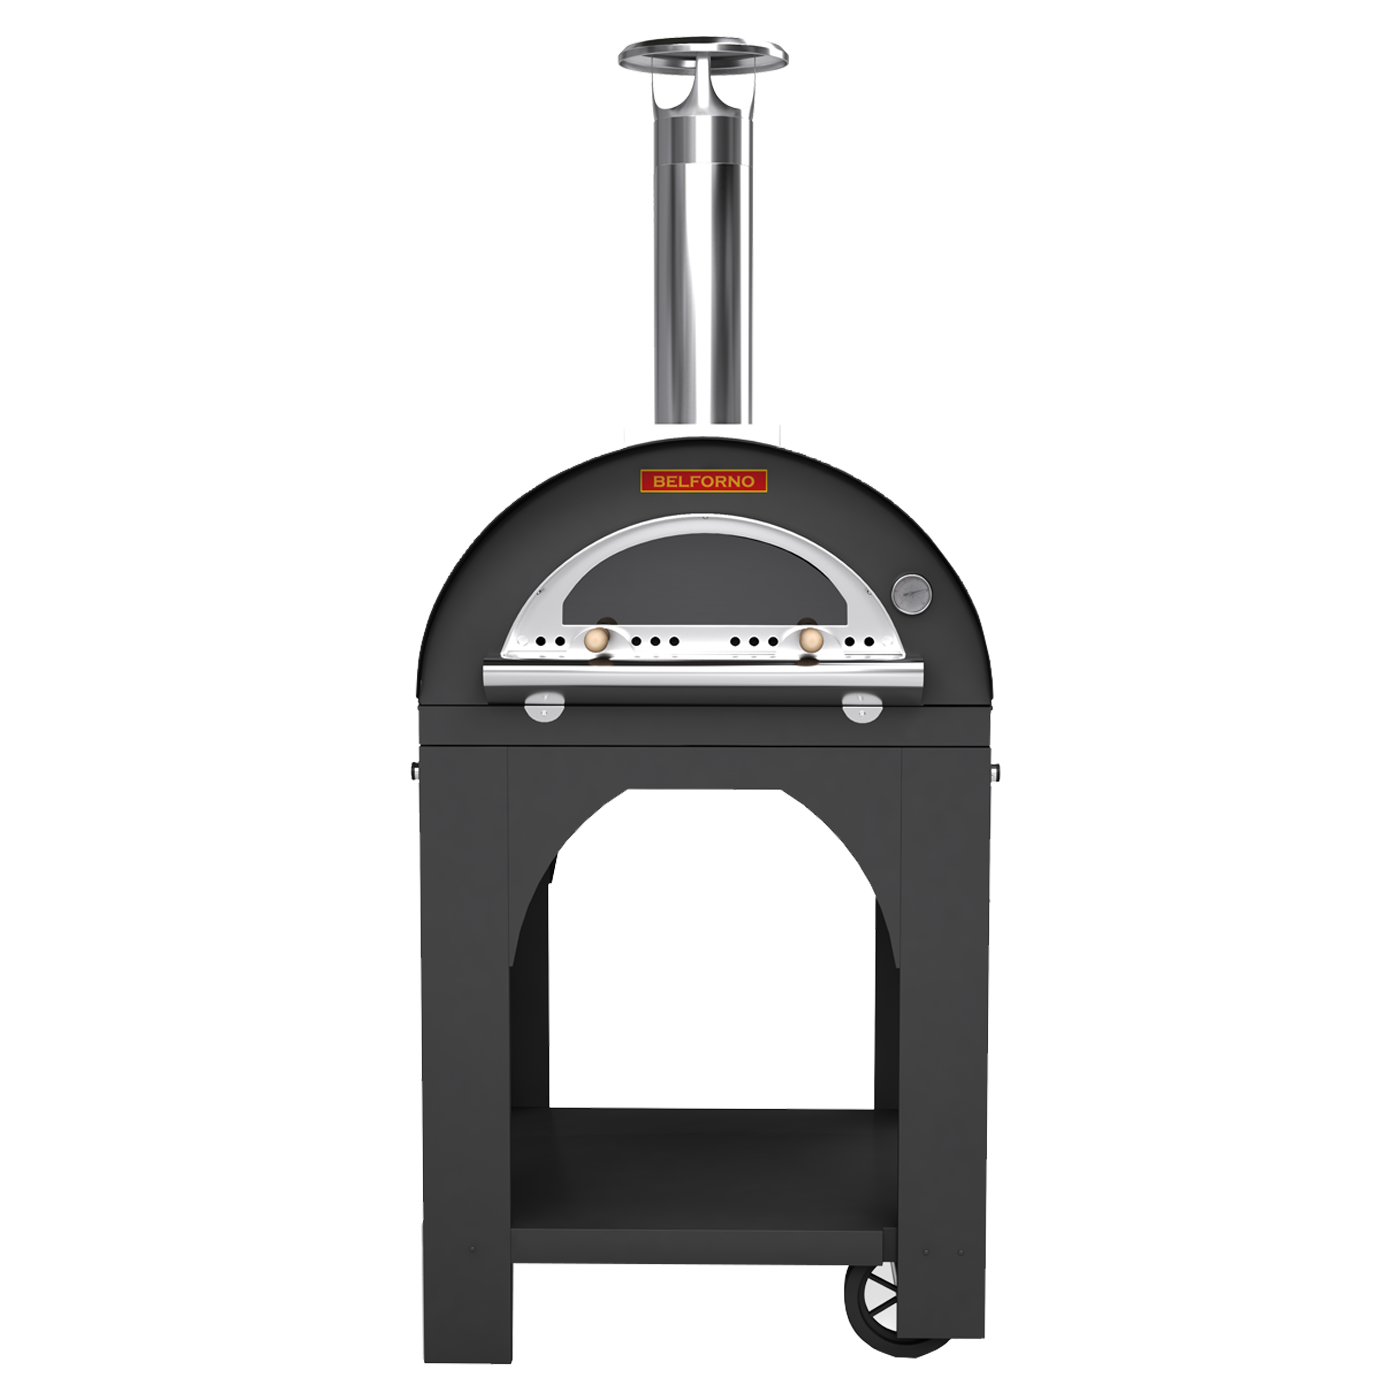 Belforno Portable Piccolo Wood-Fired Pizza Oven